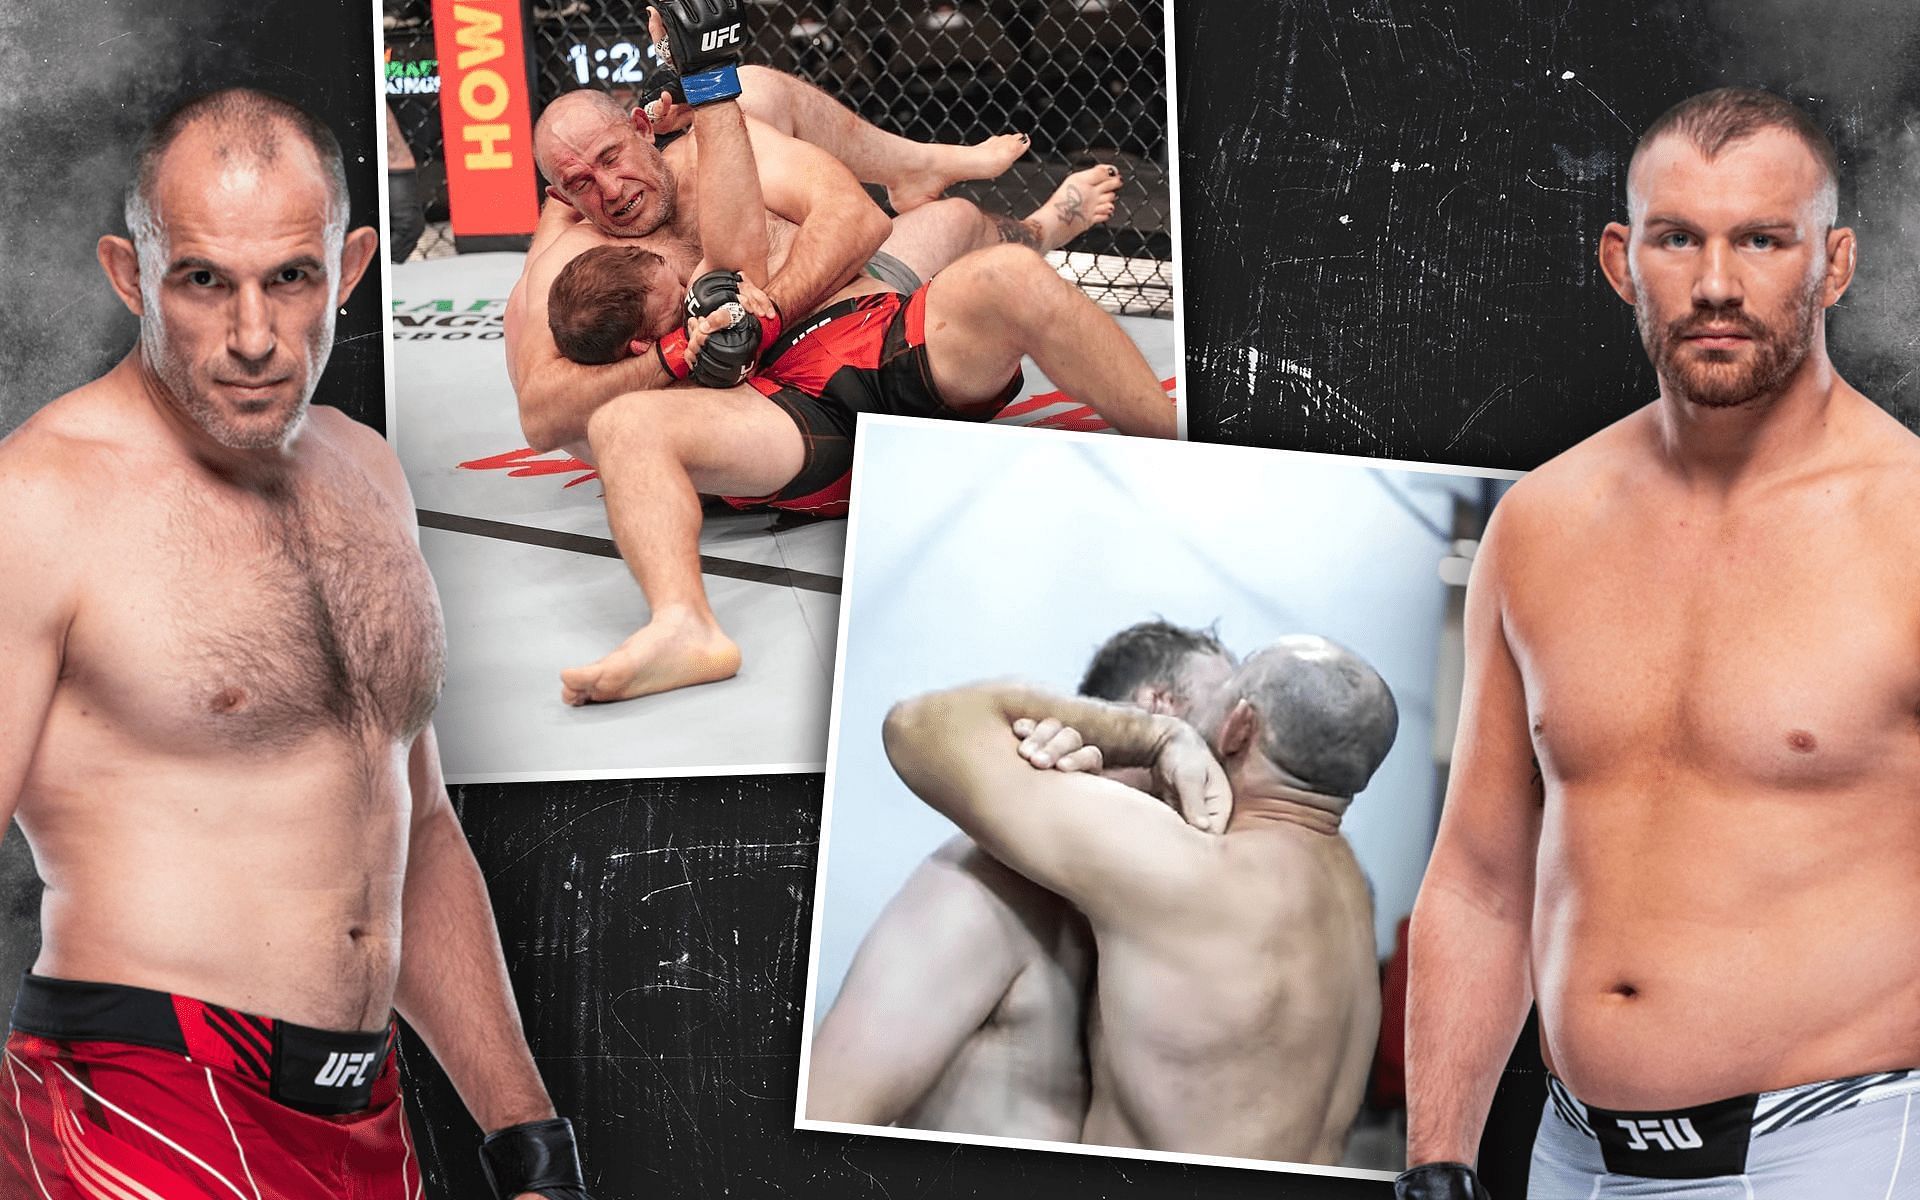 Aleksei Oleinik (left) &amp; Jared Vanderaa (right) [Image Credits- UFC.com &amp; @ufc on Instagram]